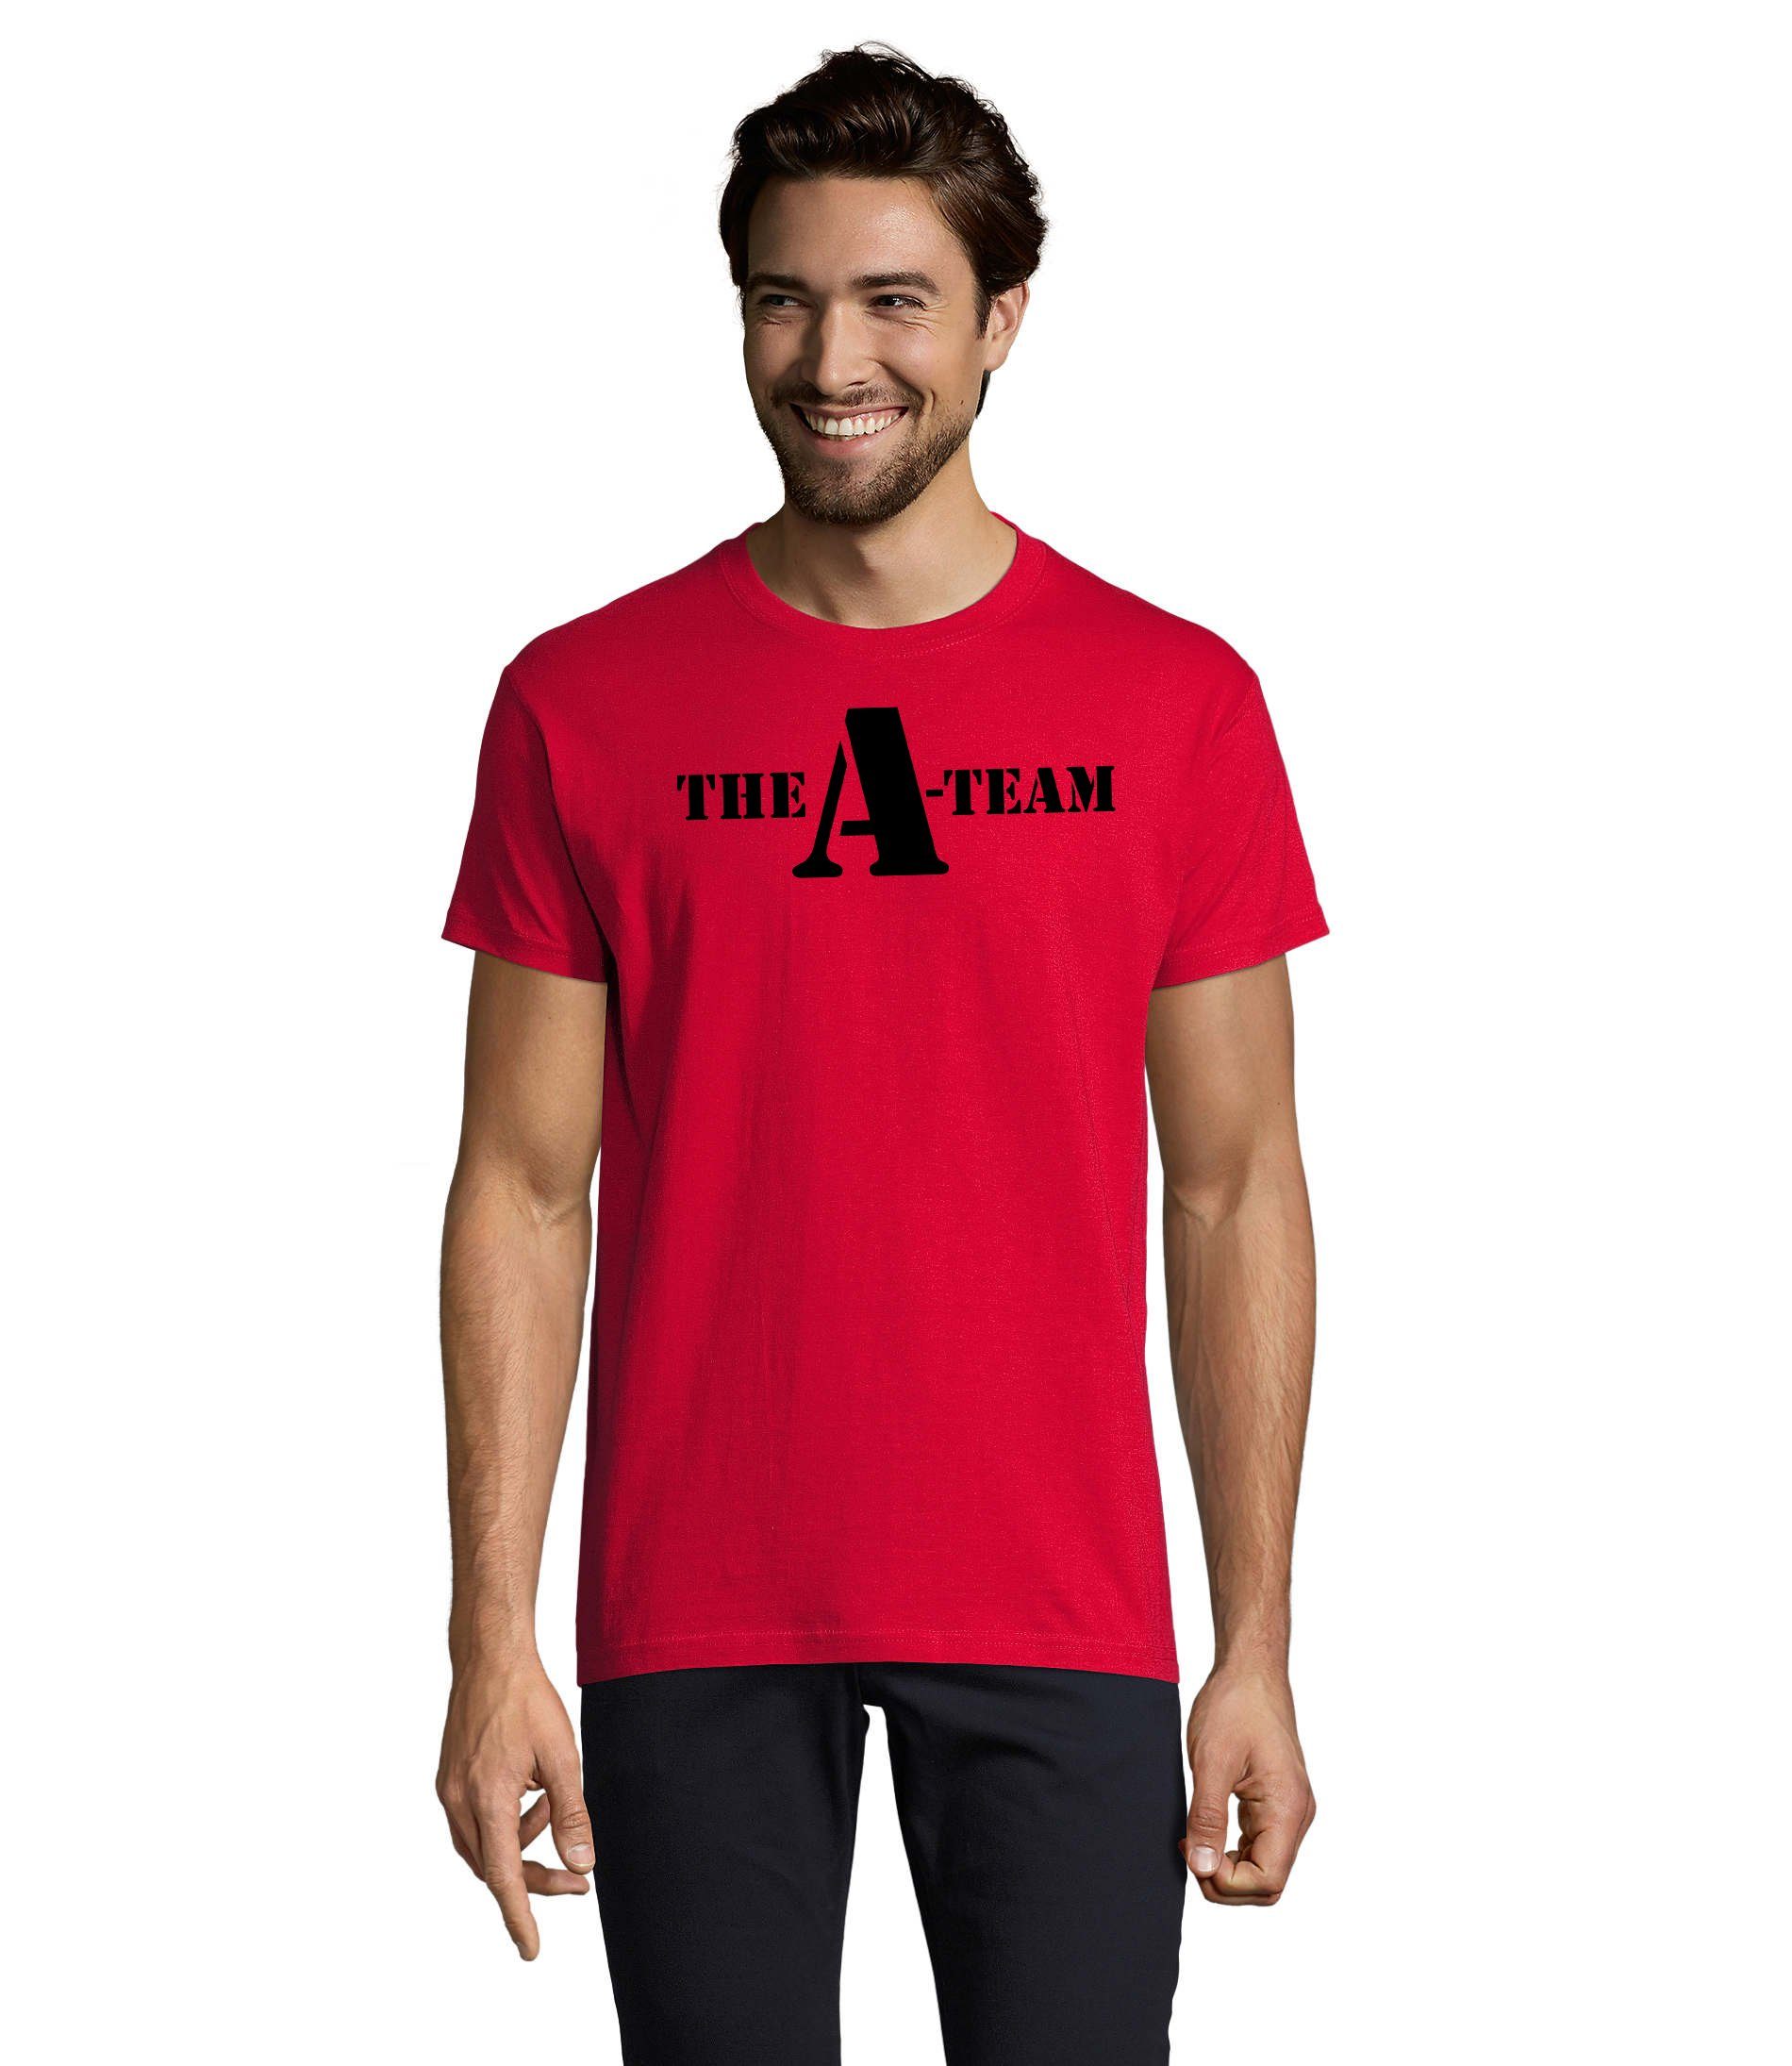 Blondie & Brownie T-Shirt Herren A Team Logo Print Van Bus Murdock Hannibal Serie Rot